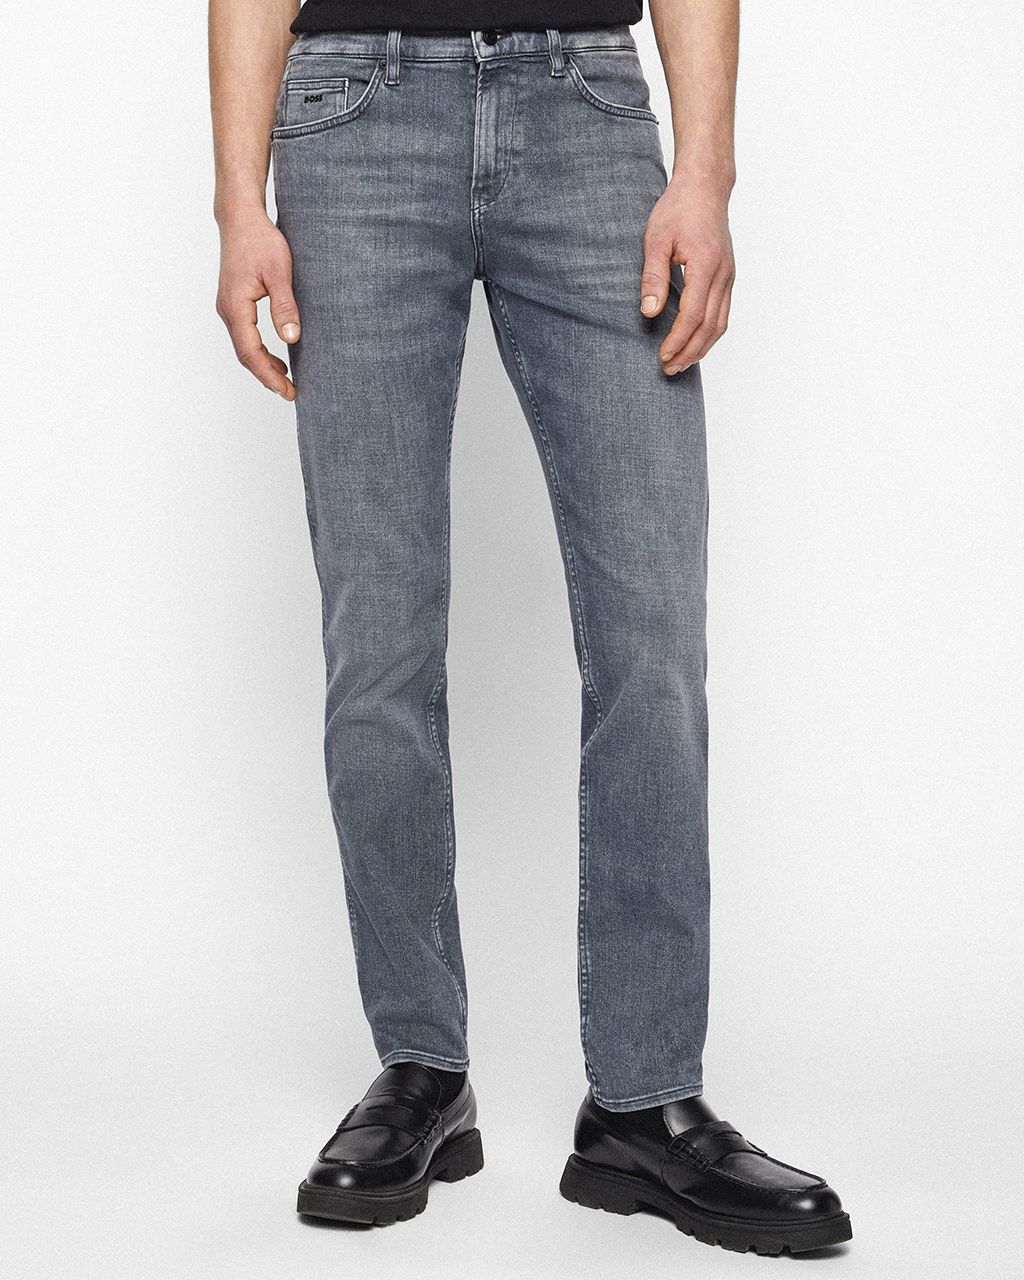 Hugo Boss Menswear Delaware Jeans Grijs 076340-001-31/32